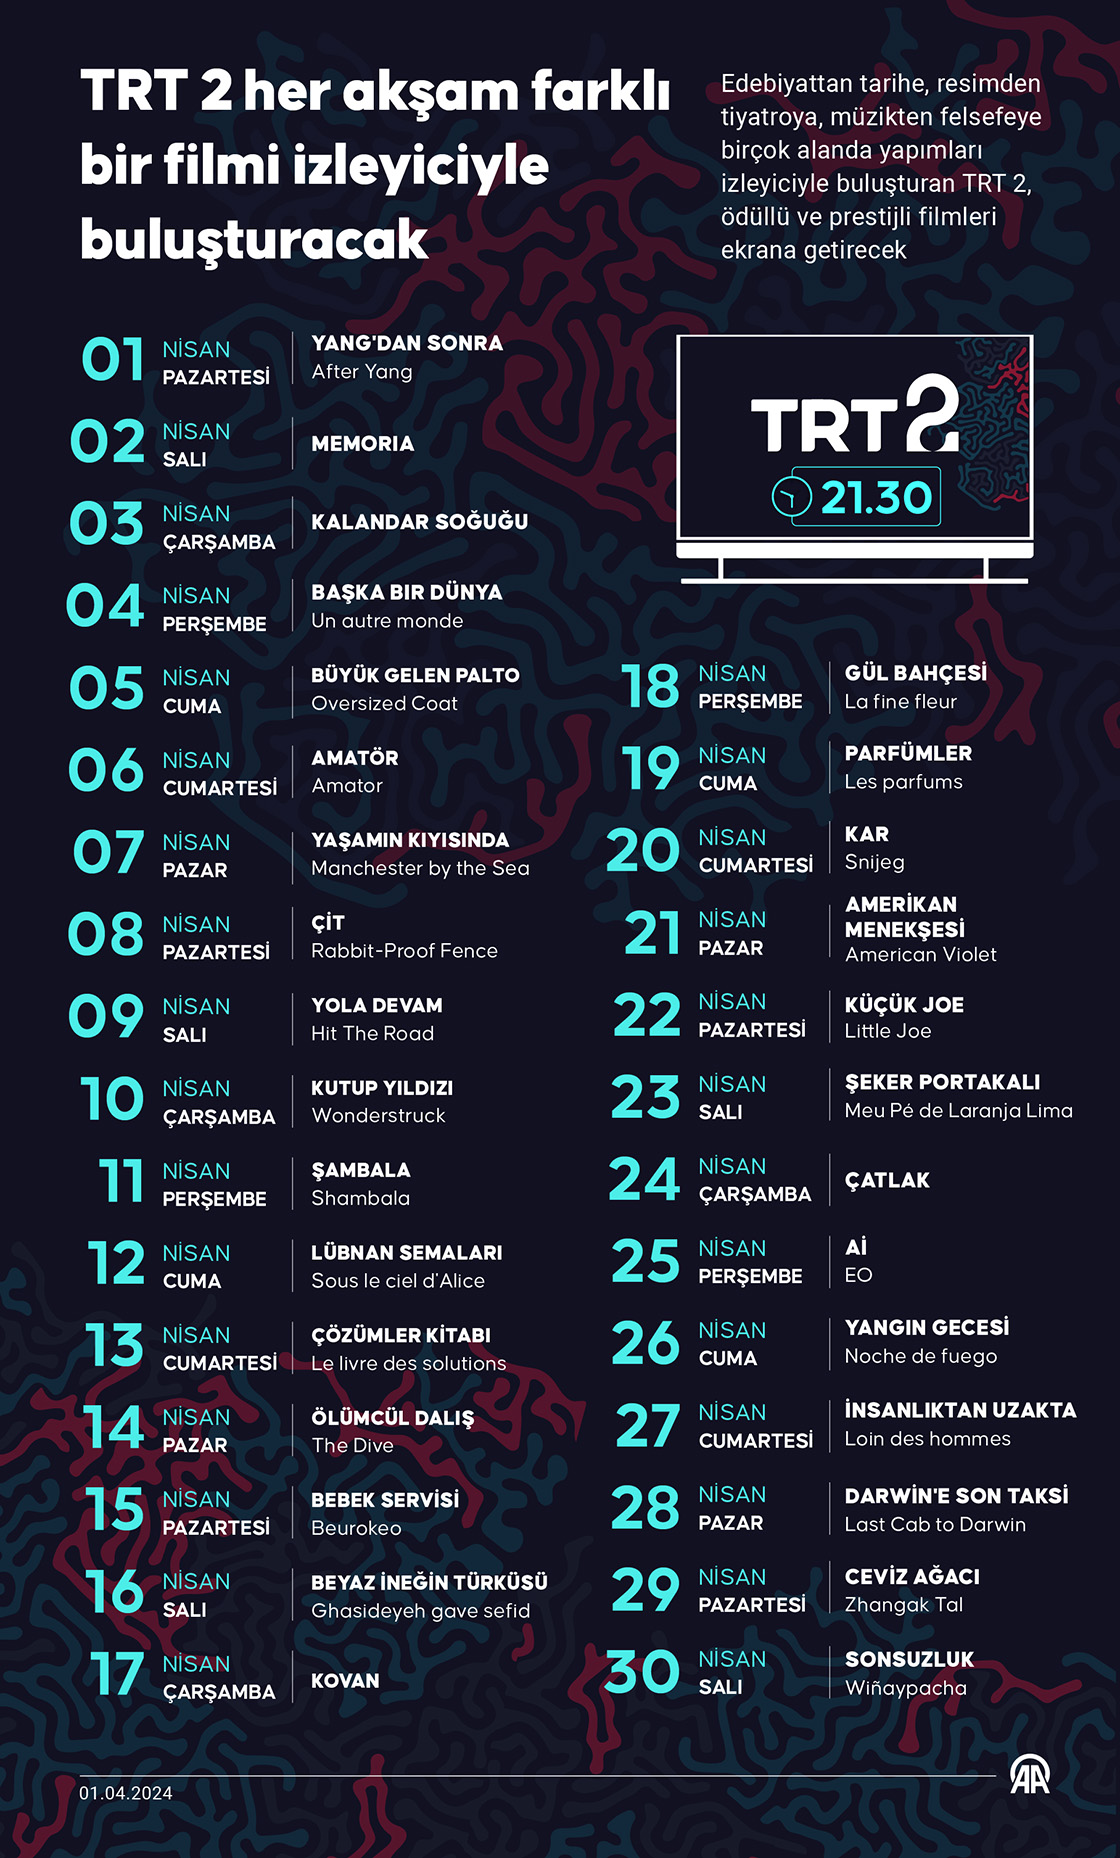 TRT 2 her akşam farklı bir filmi izleyiciyle buluşturacak